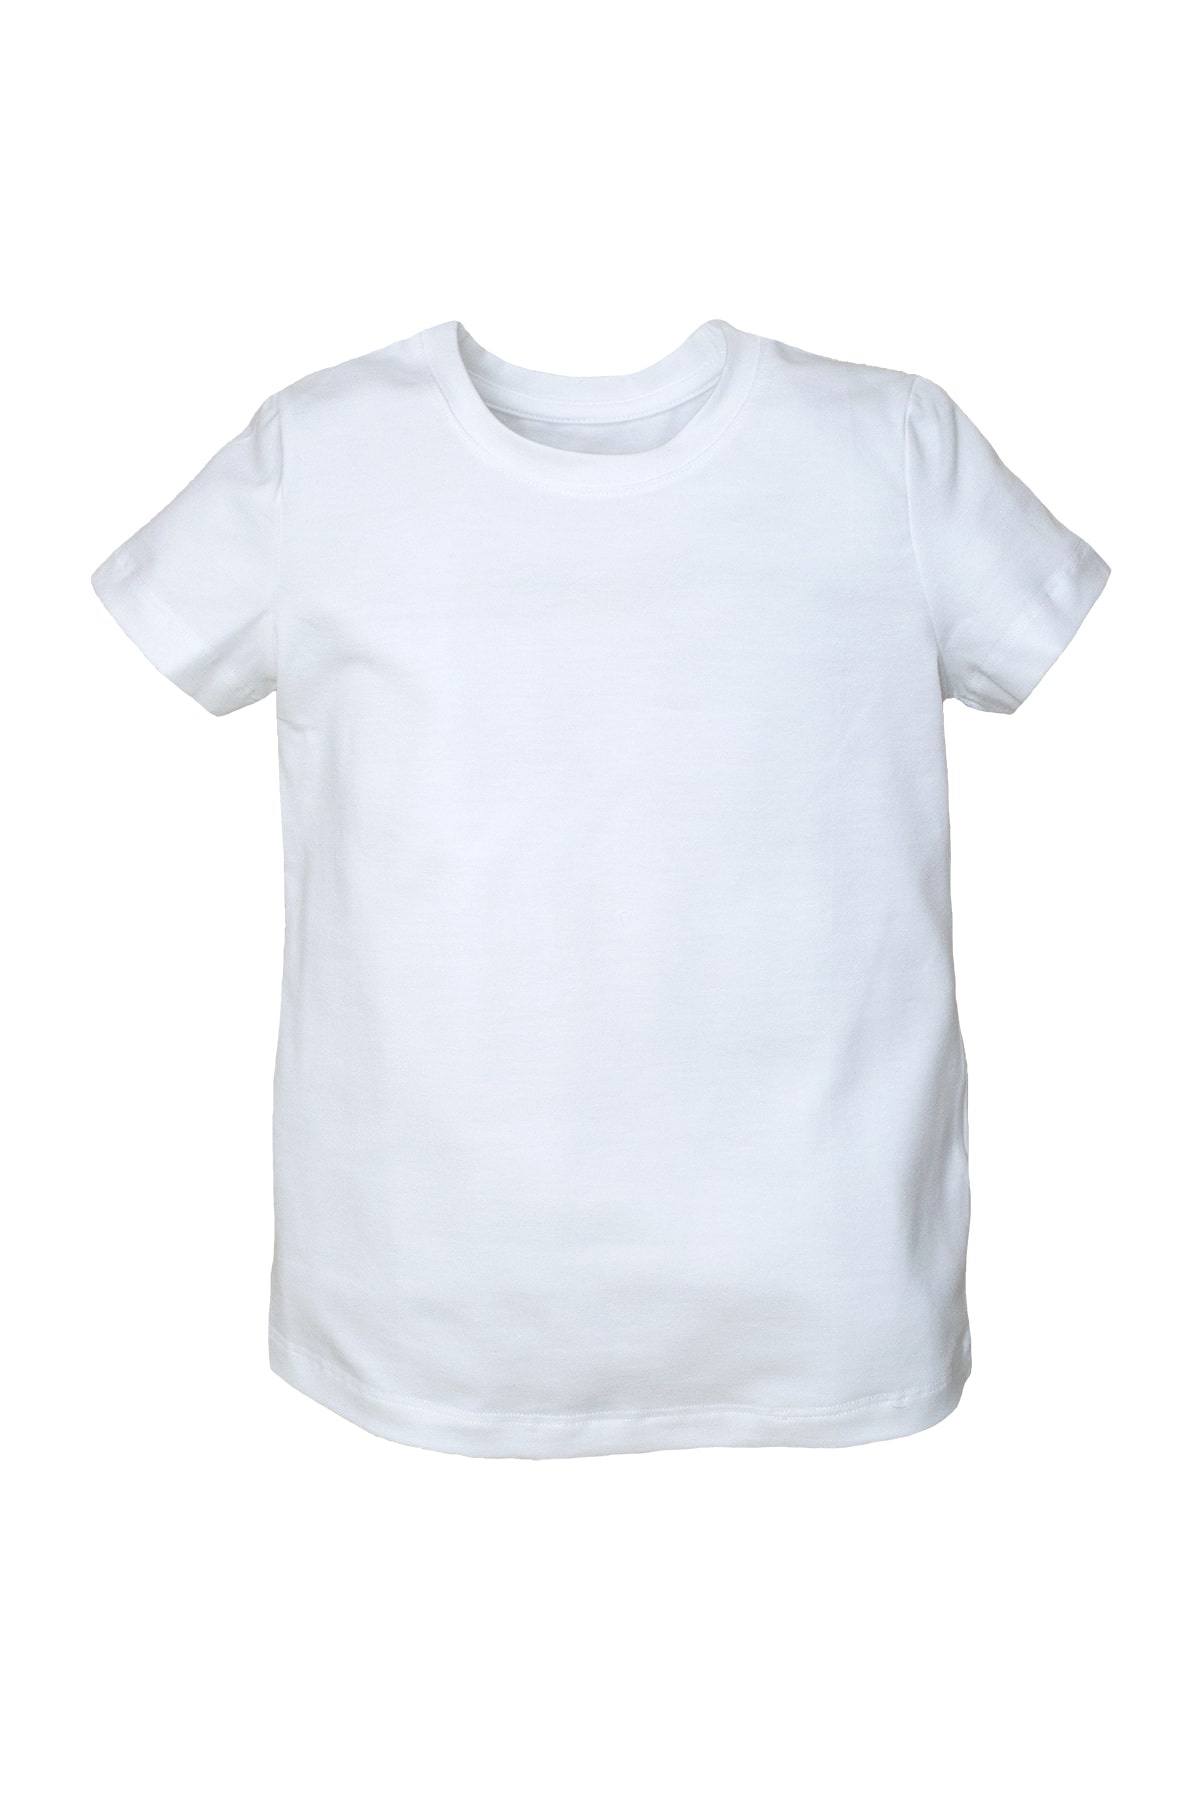 Белая футболка детская без рисунка